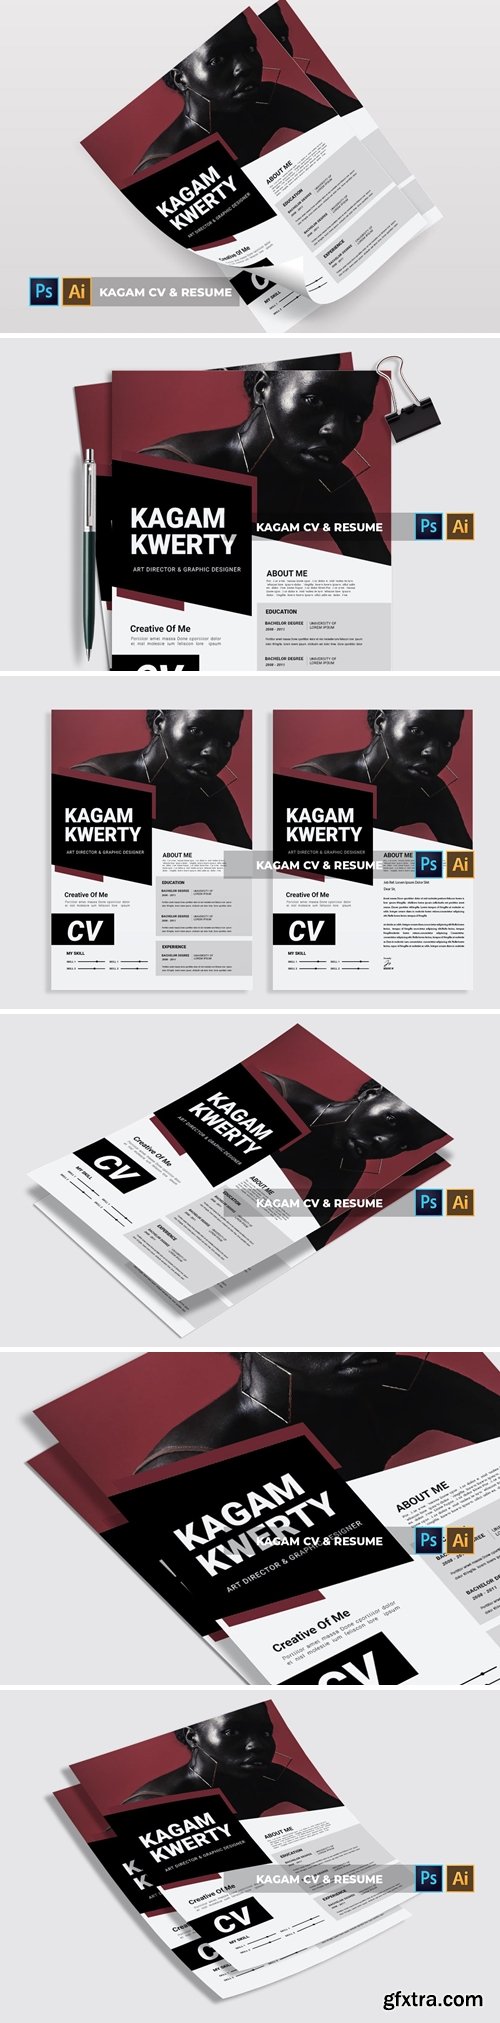 Kagam | CV & Resume